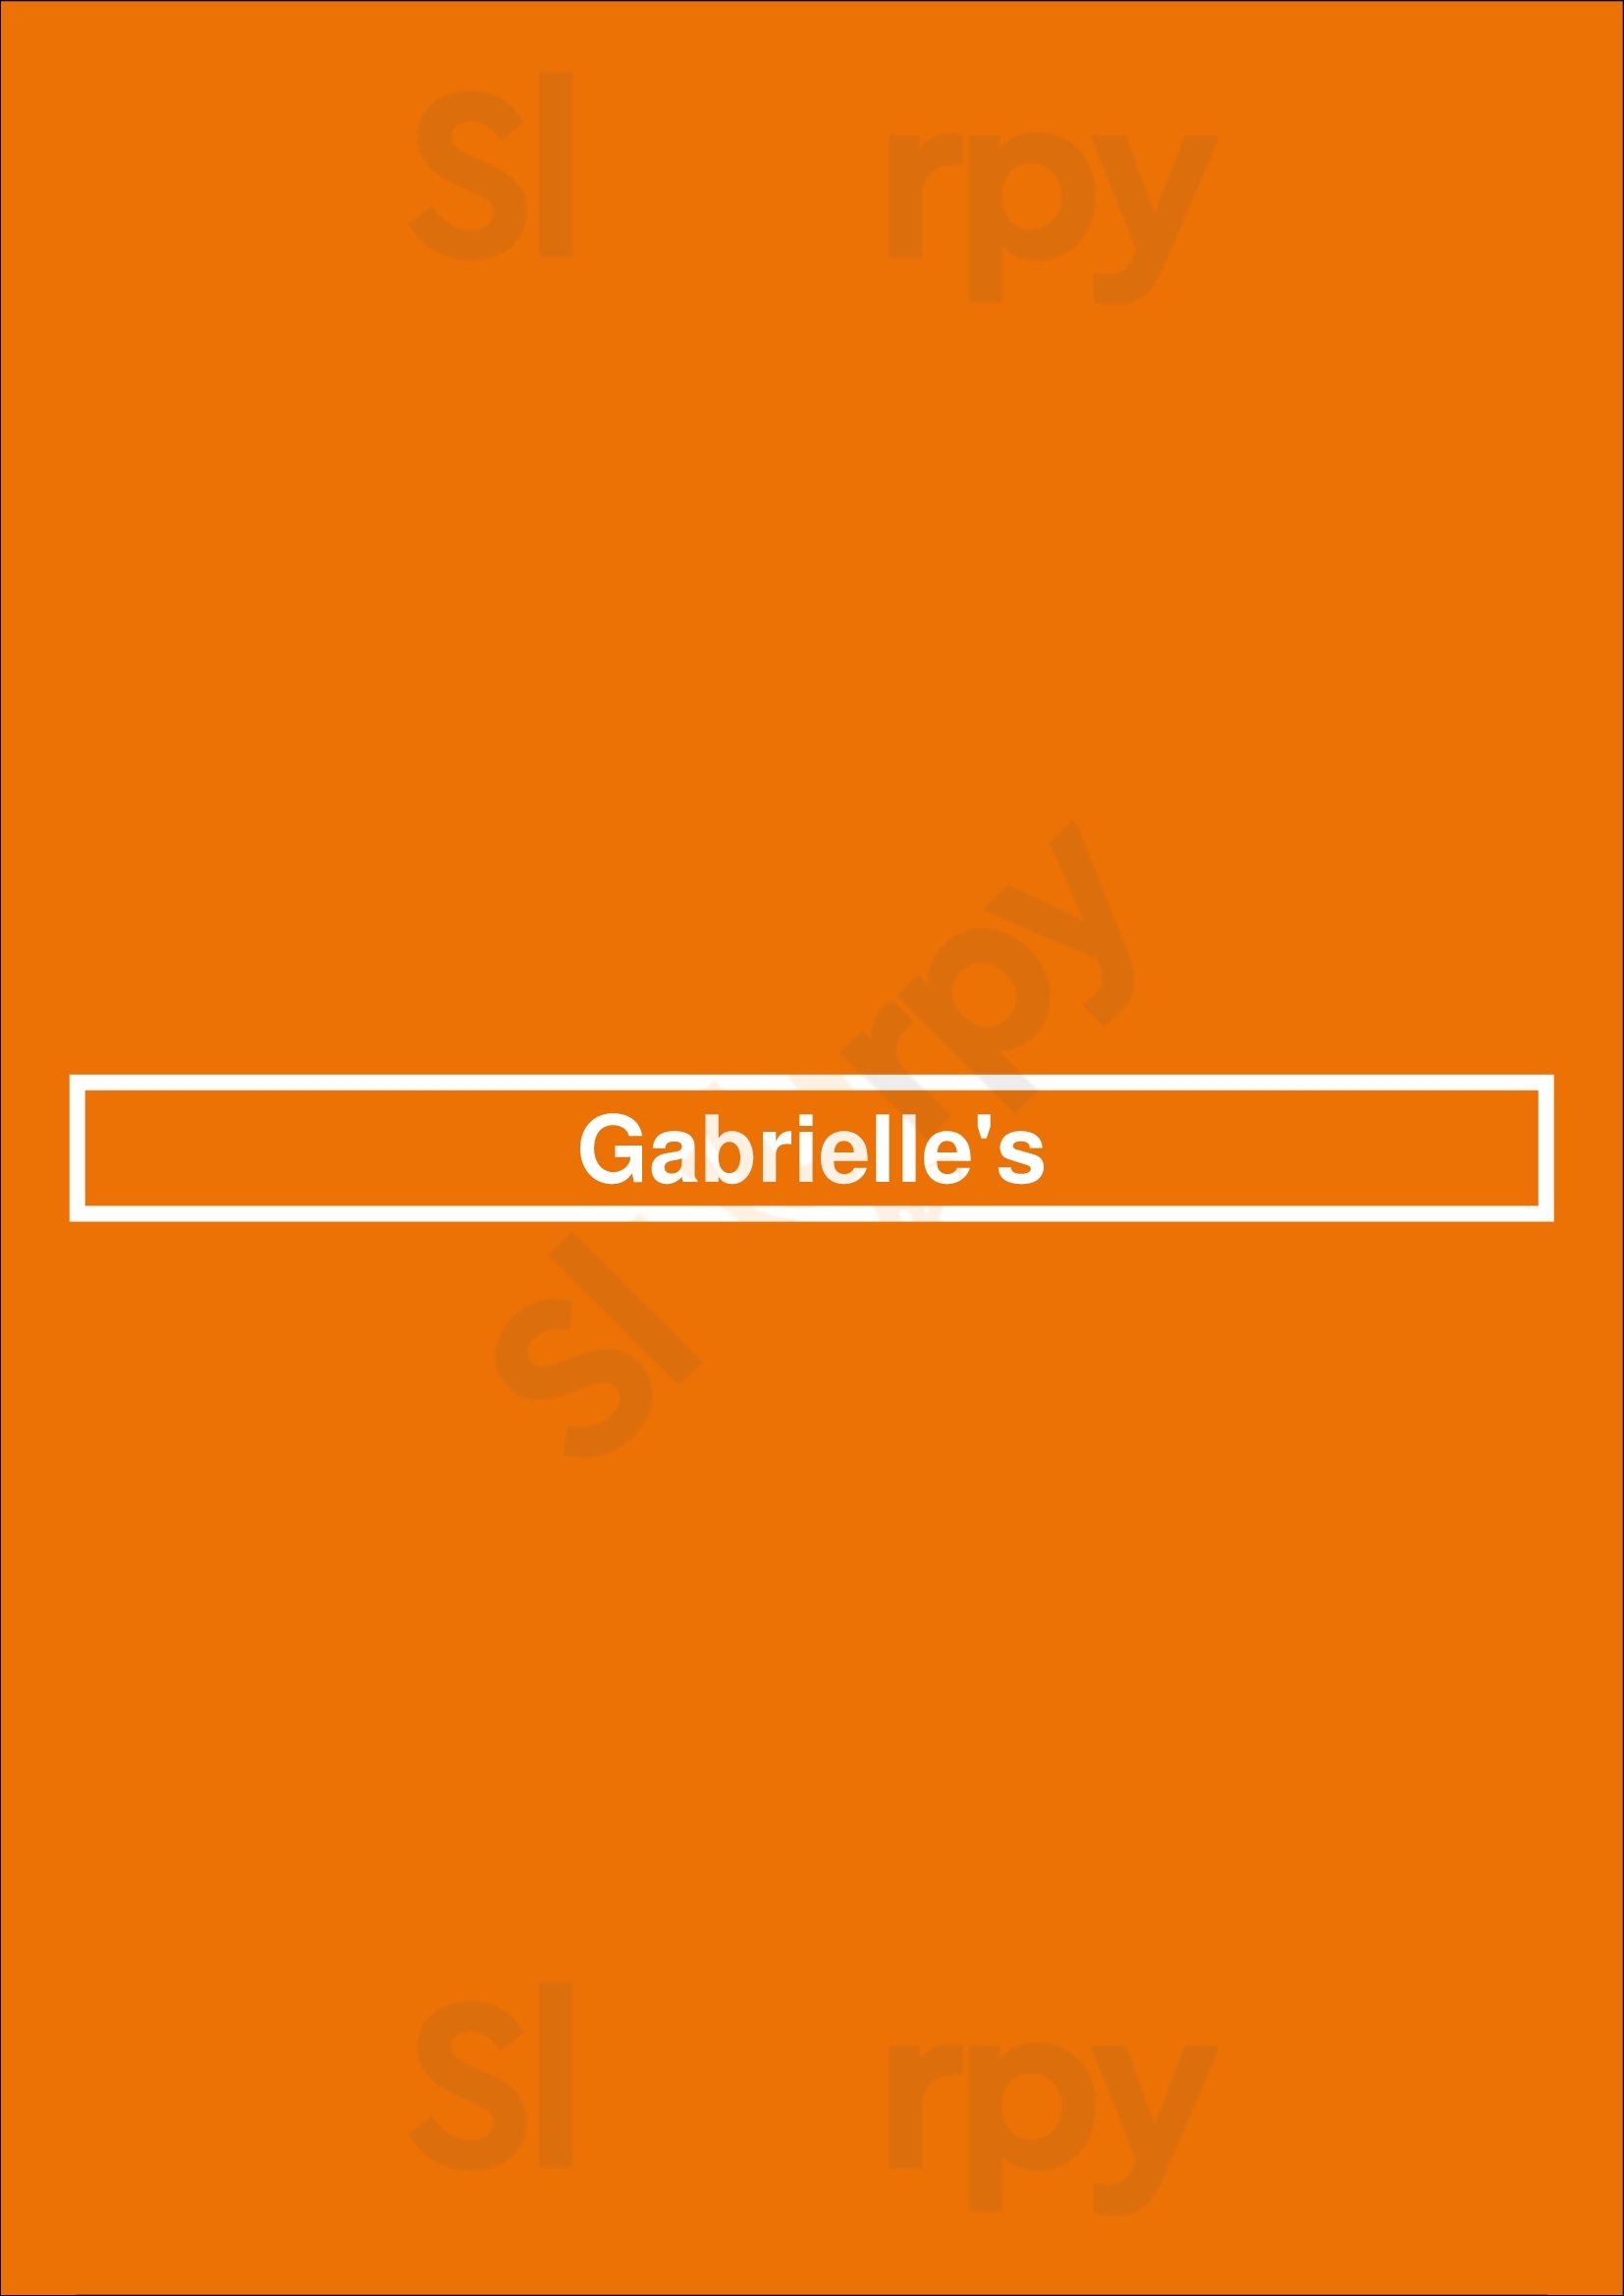 Gabrielle's Redcar Menu - 1